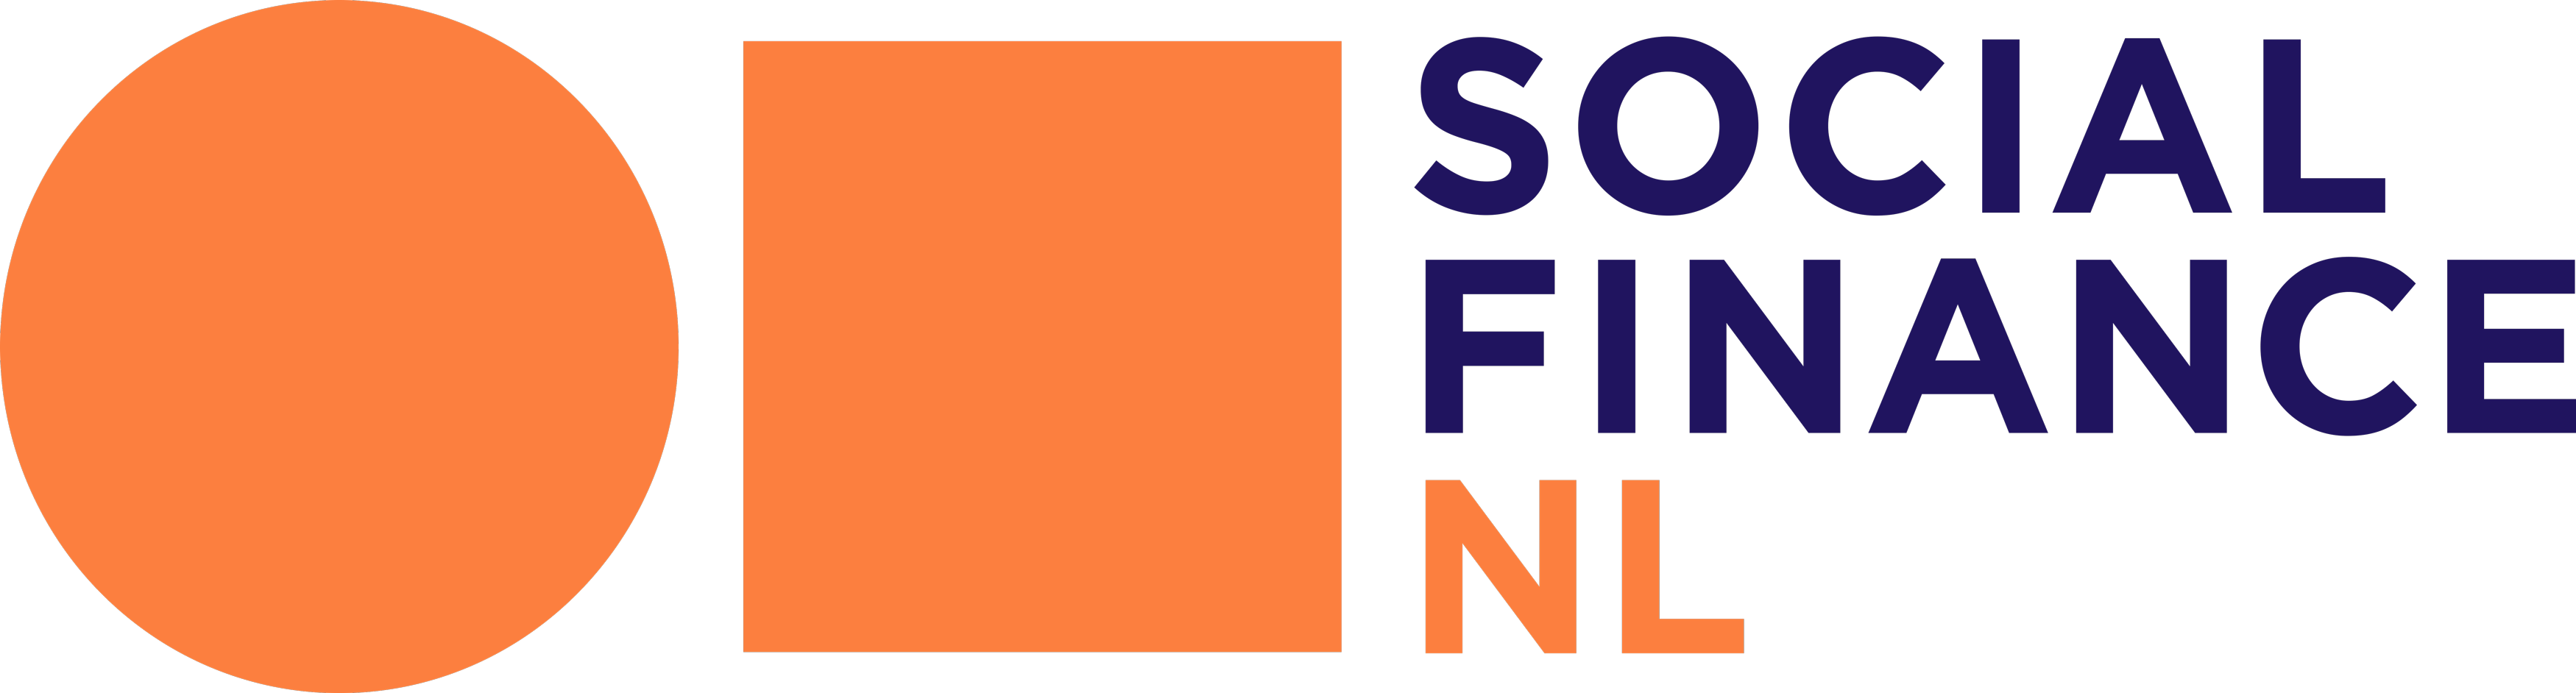 Social finance NL